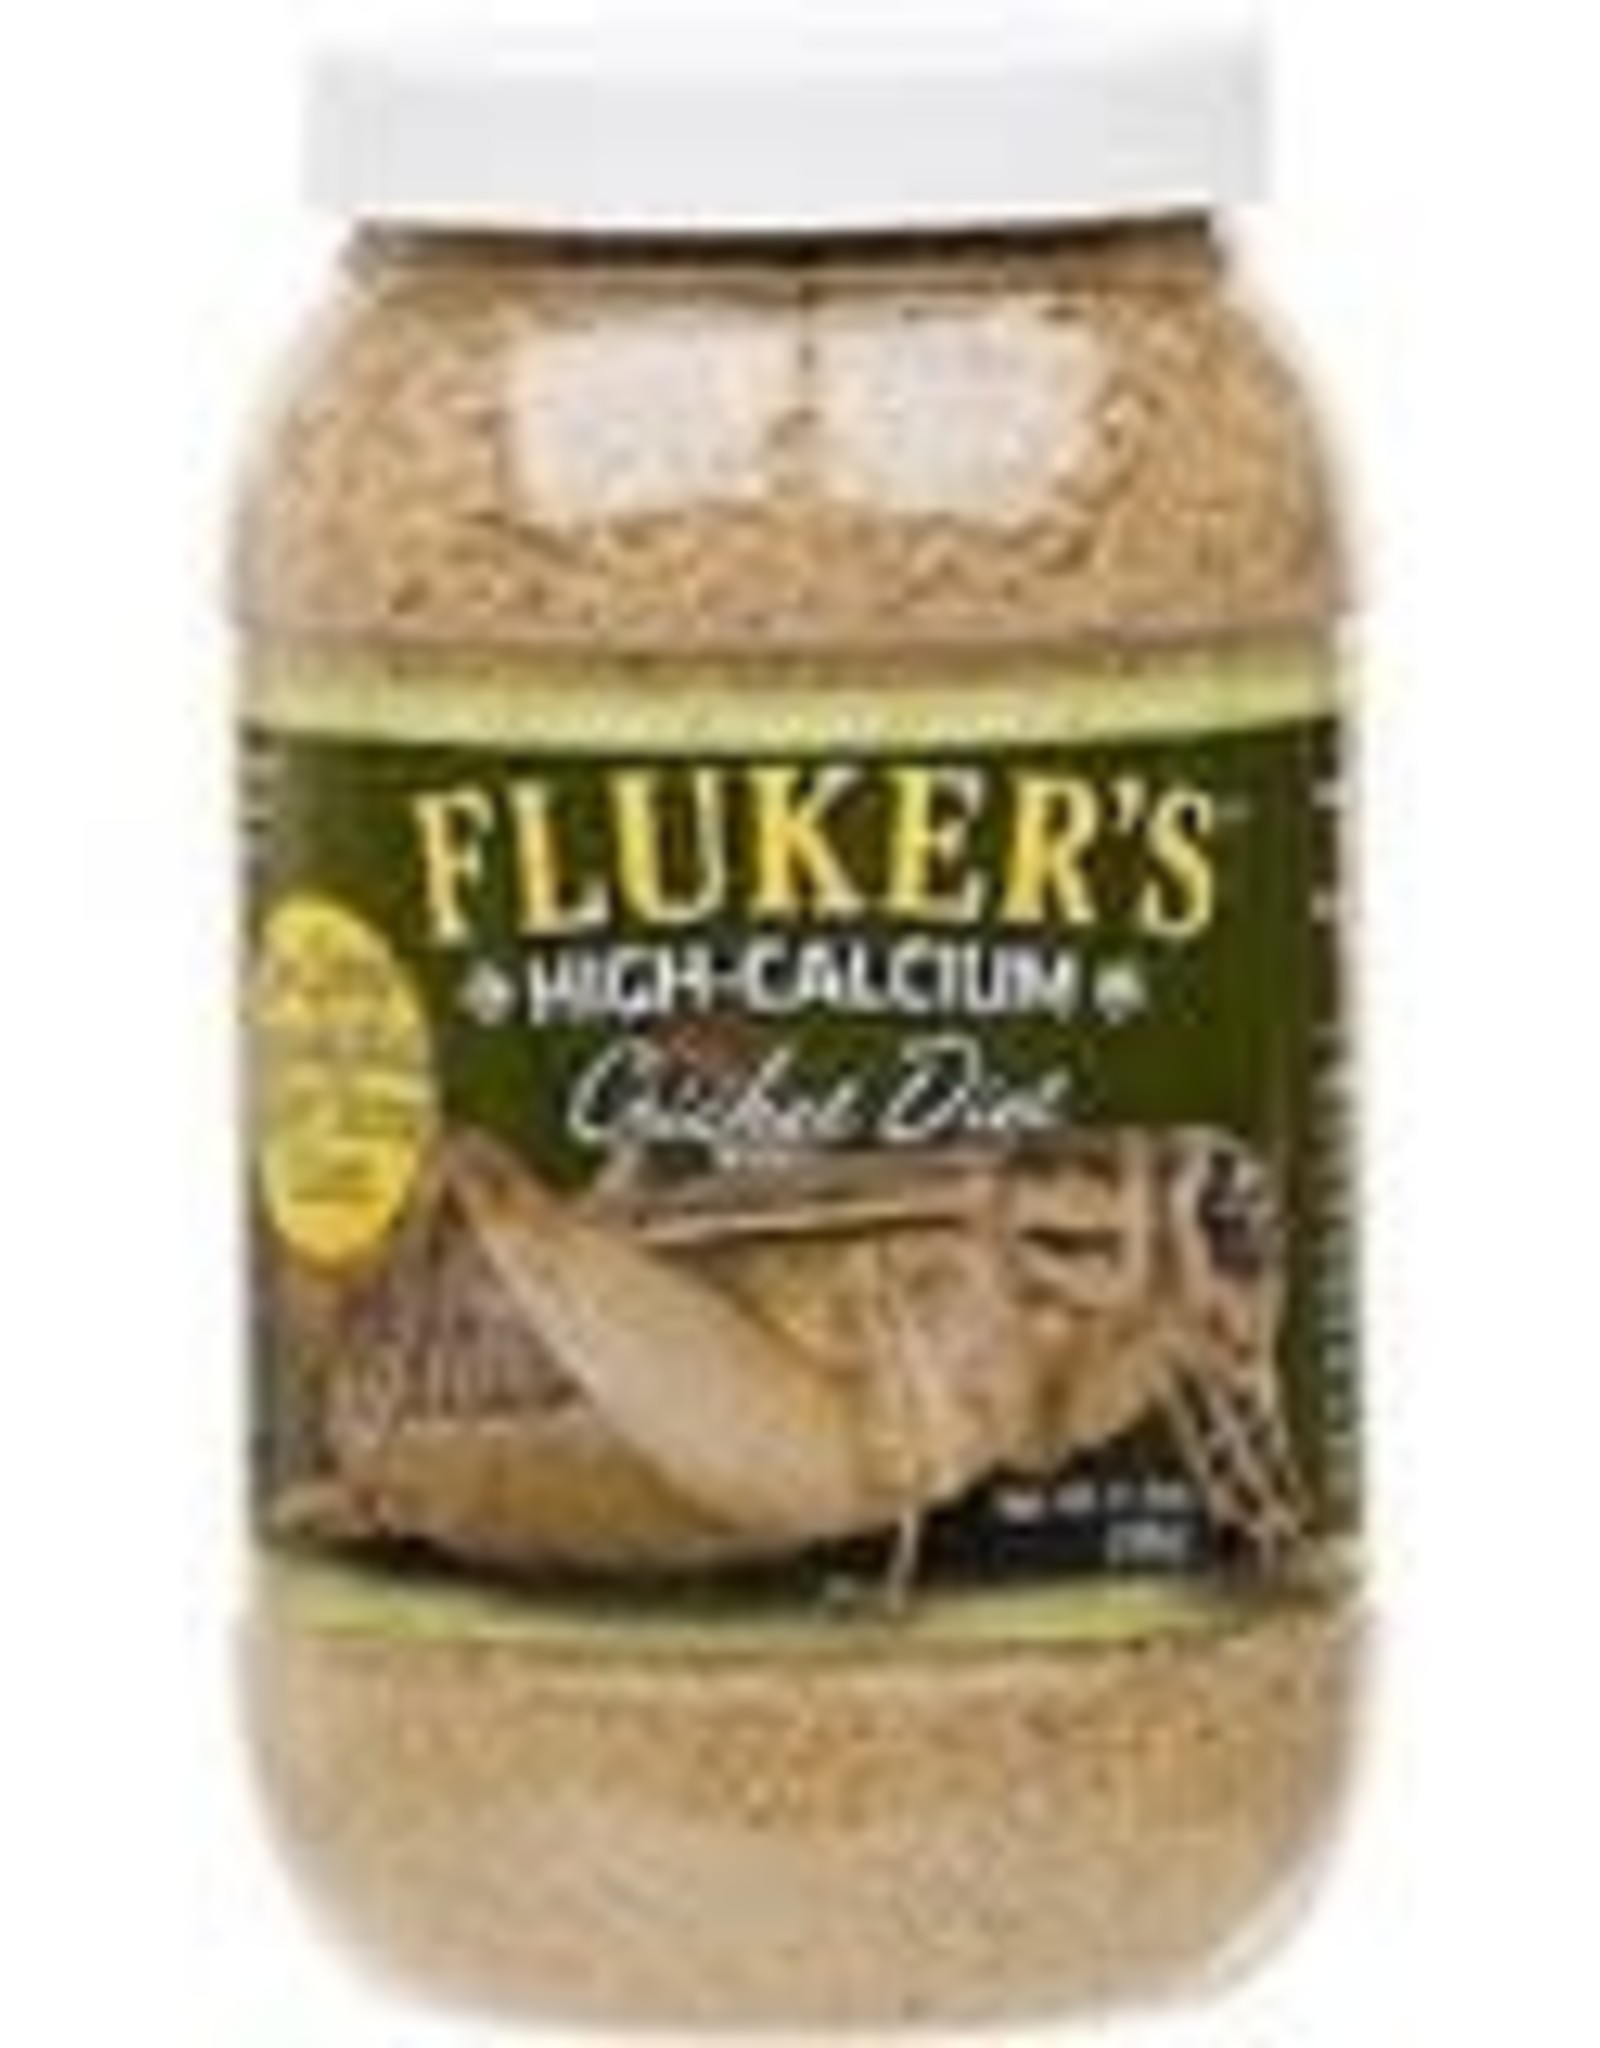 FLUKER'S FLUKER'S- HIGH-CALCIUM- 3X3X6- 11.5 OZ- CRICKET DIET